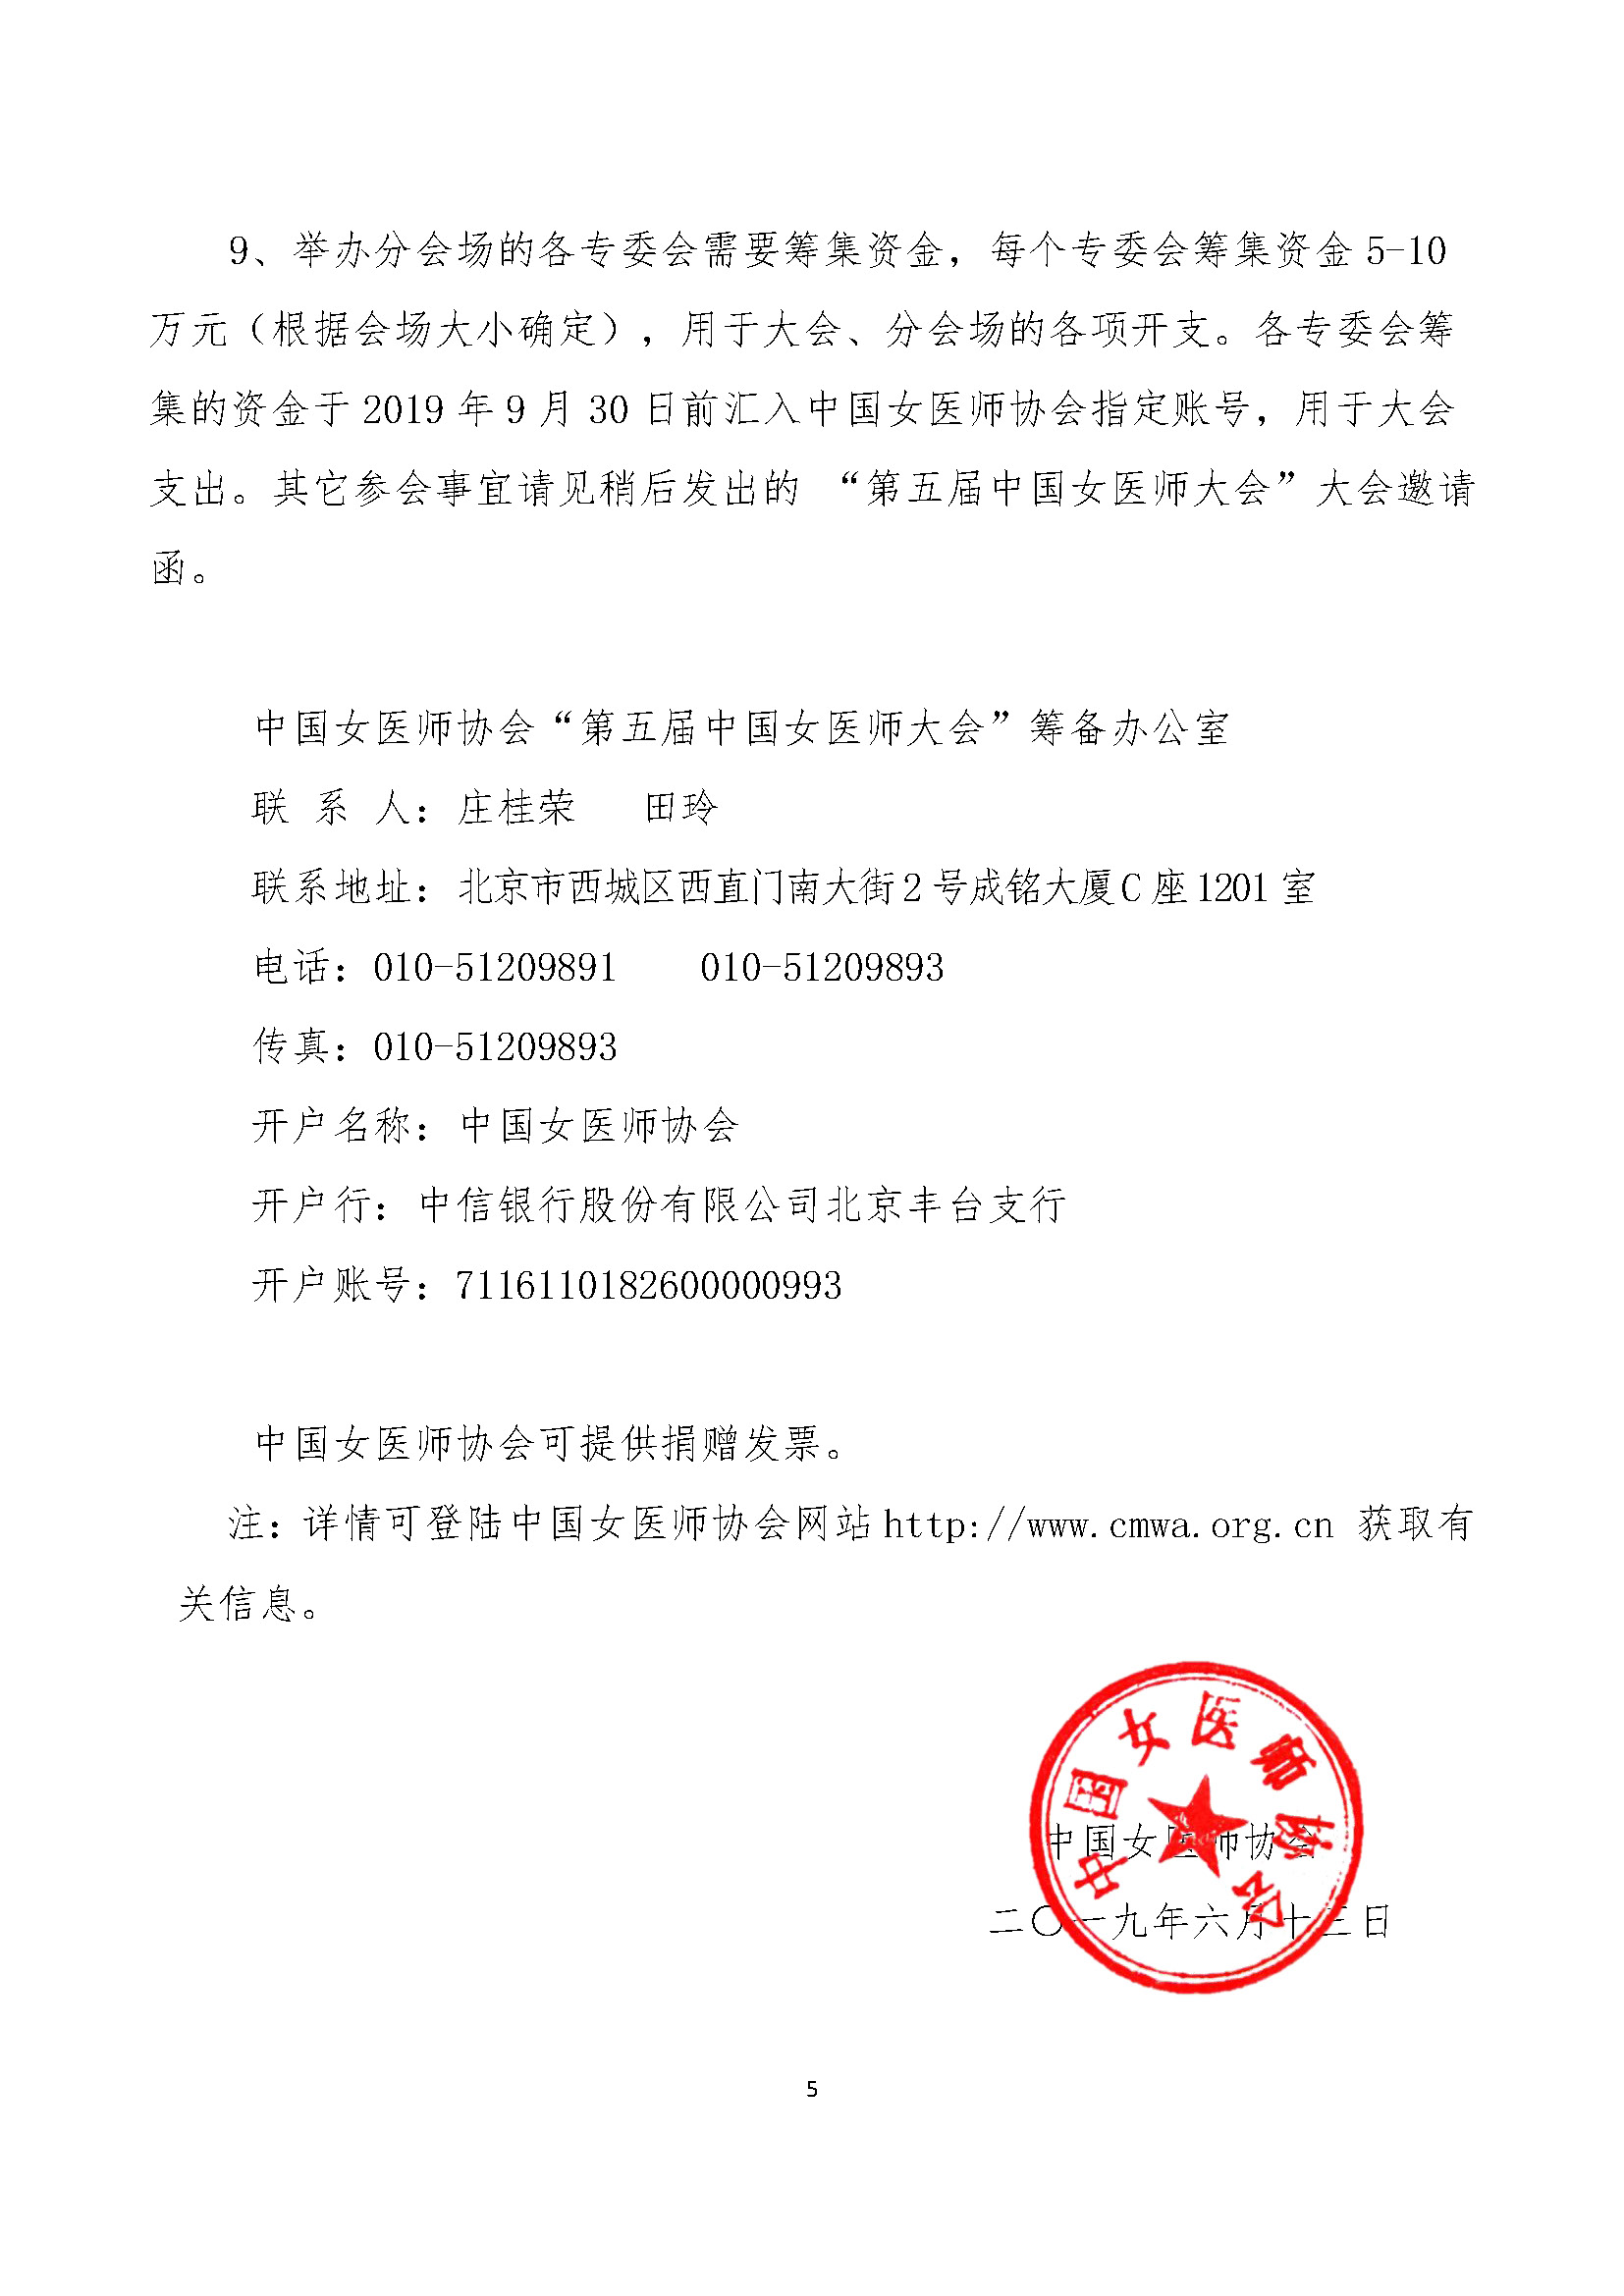 第五届中国女医师大会第一轮通知-20190614_页面_5.jpg